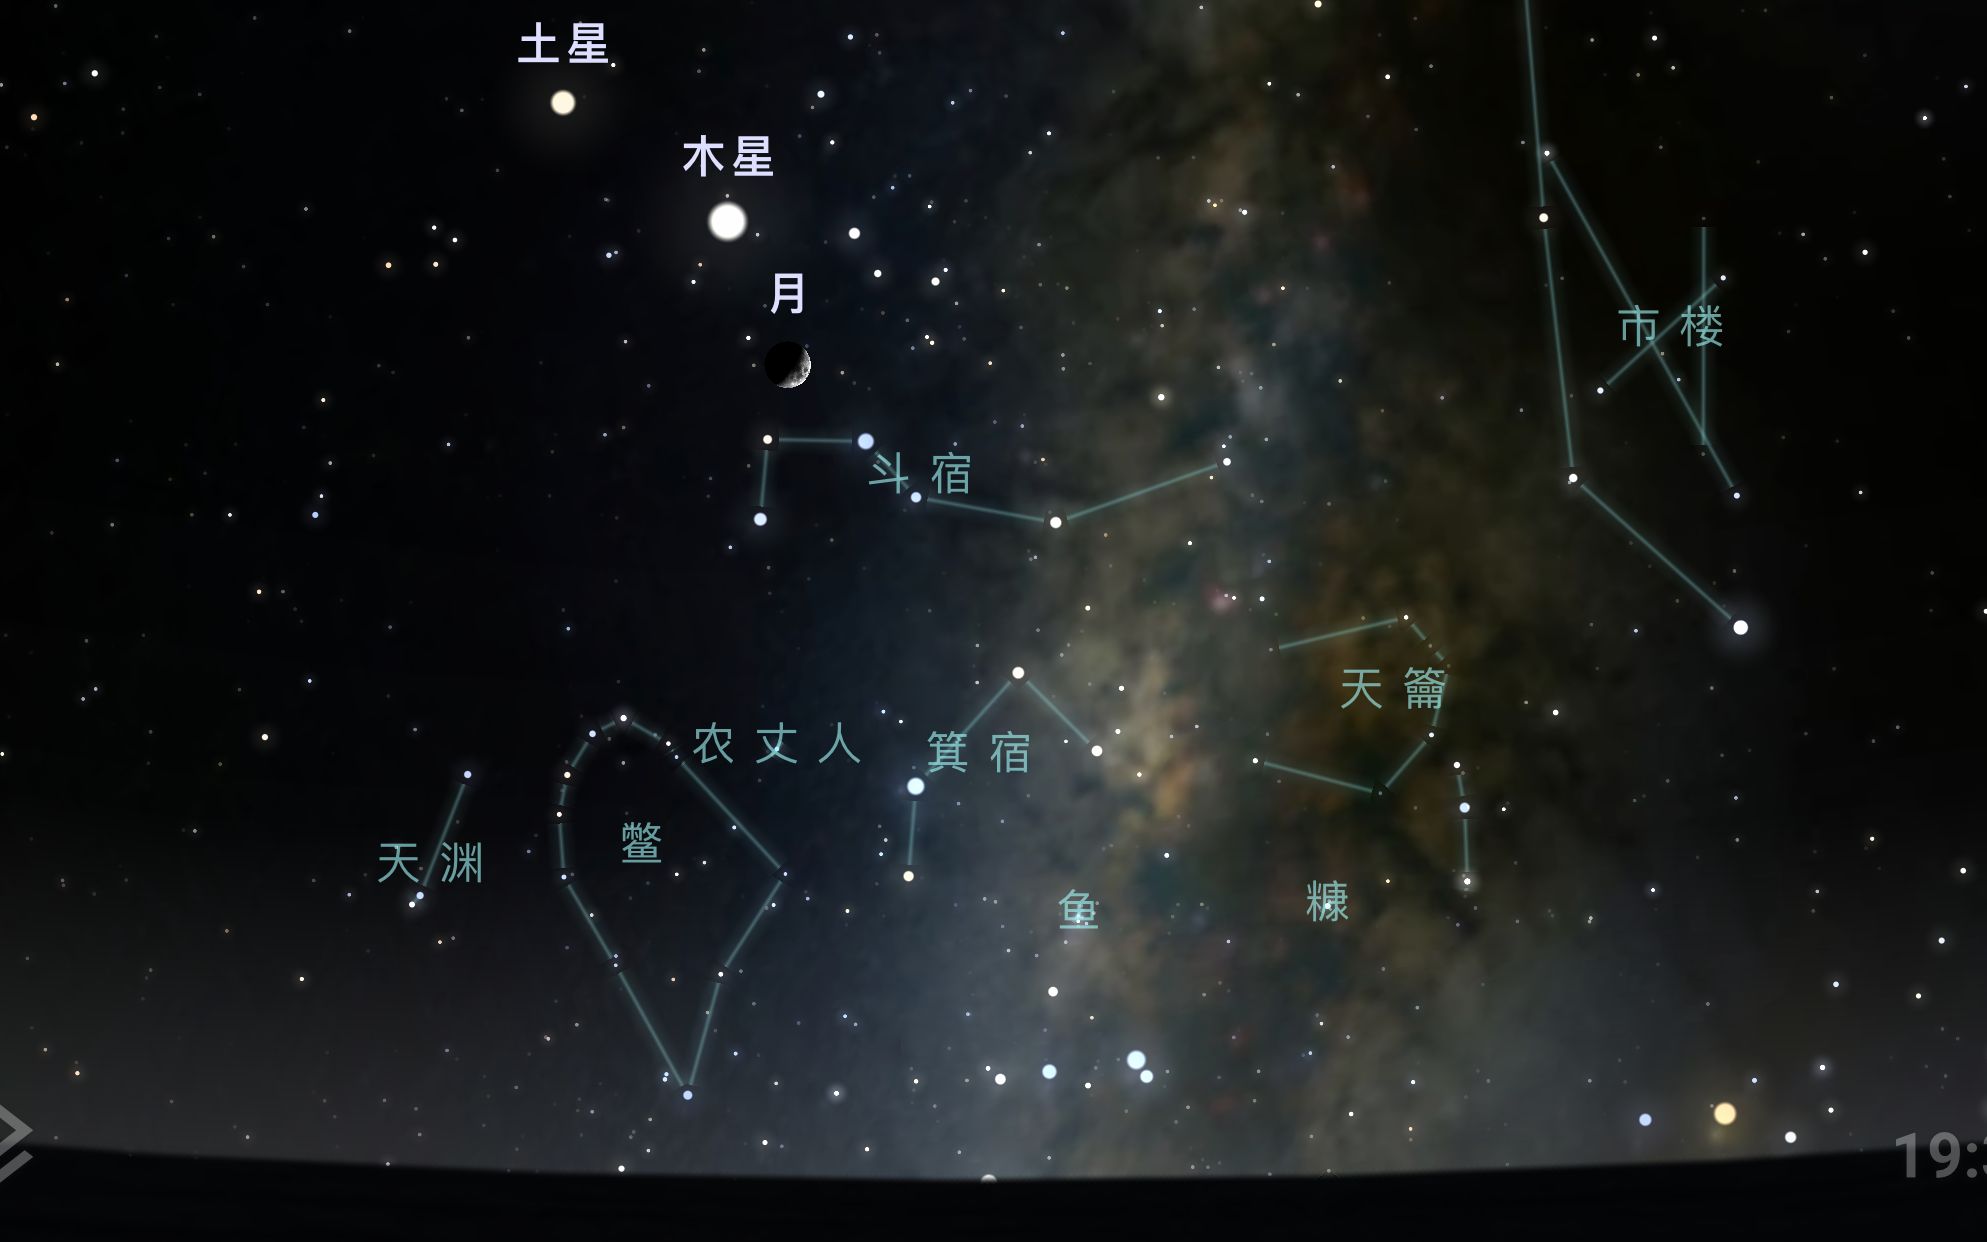 南斗六星长什么样子?它在天空哪个位置?